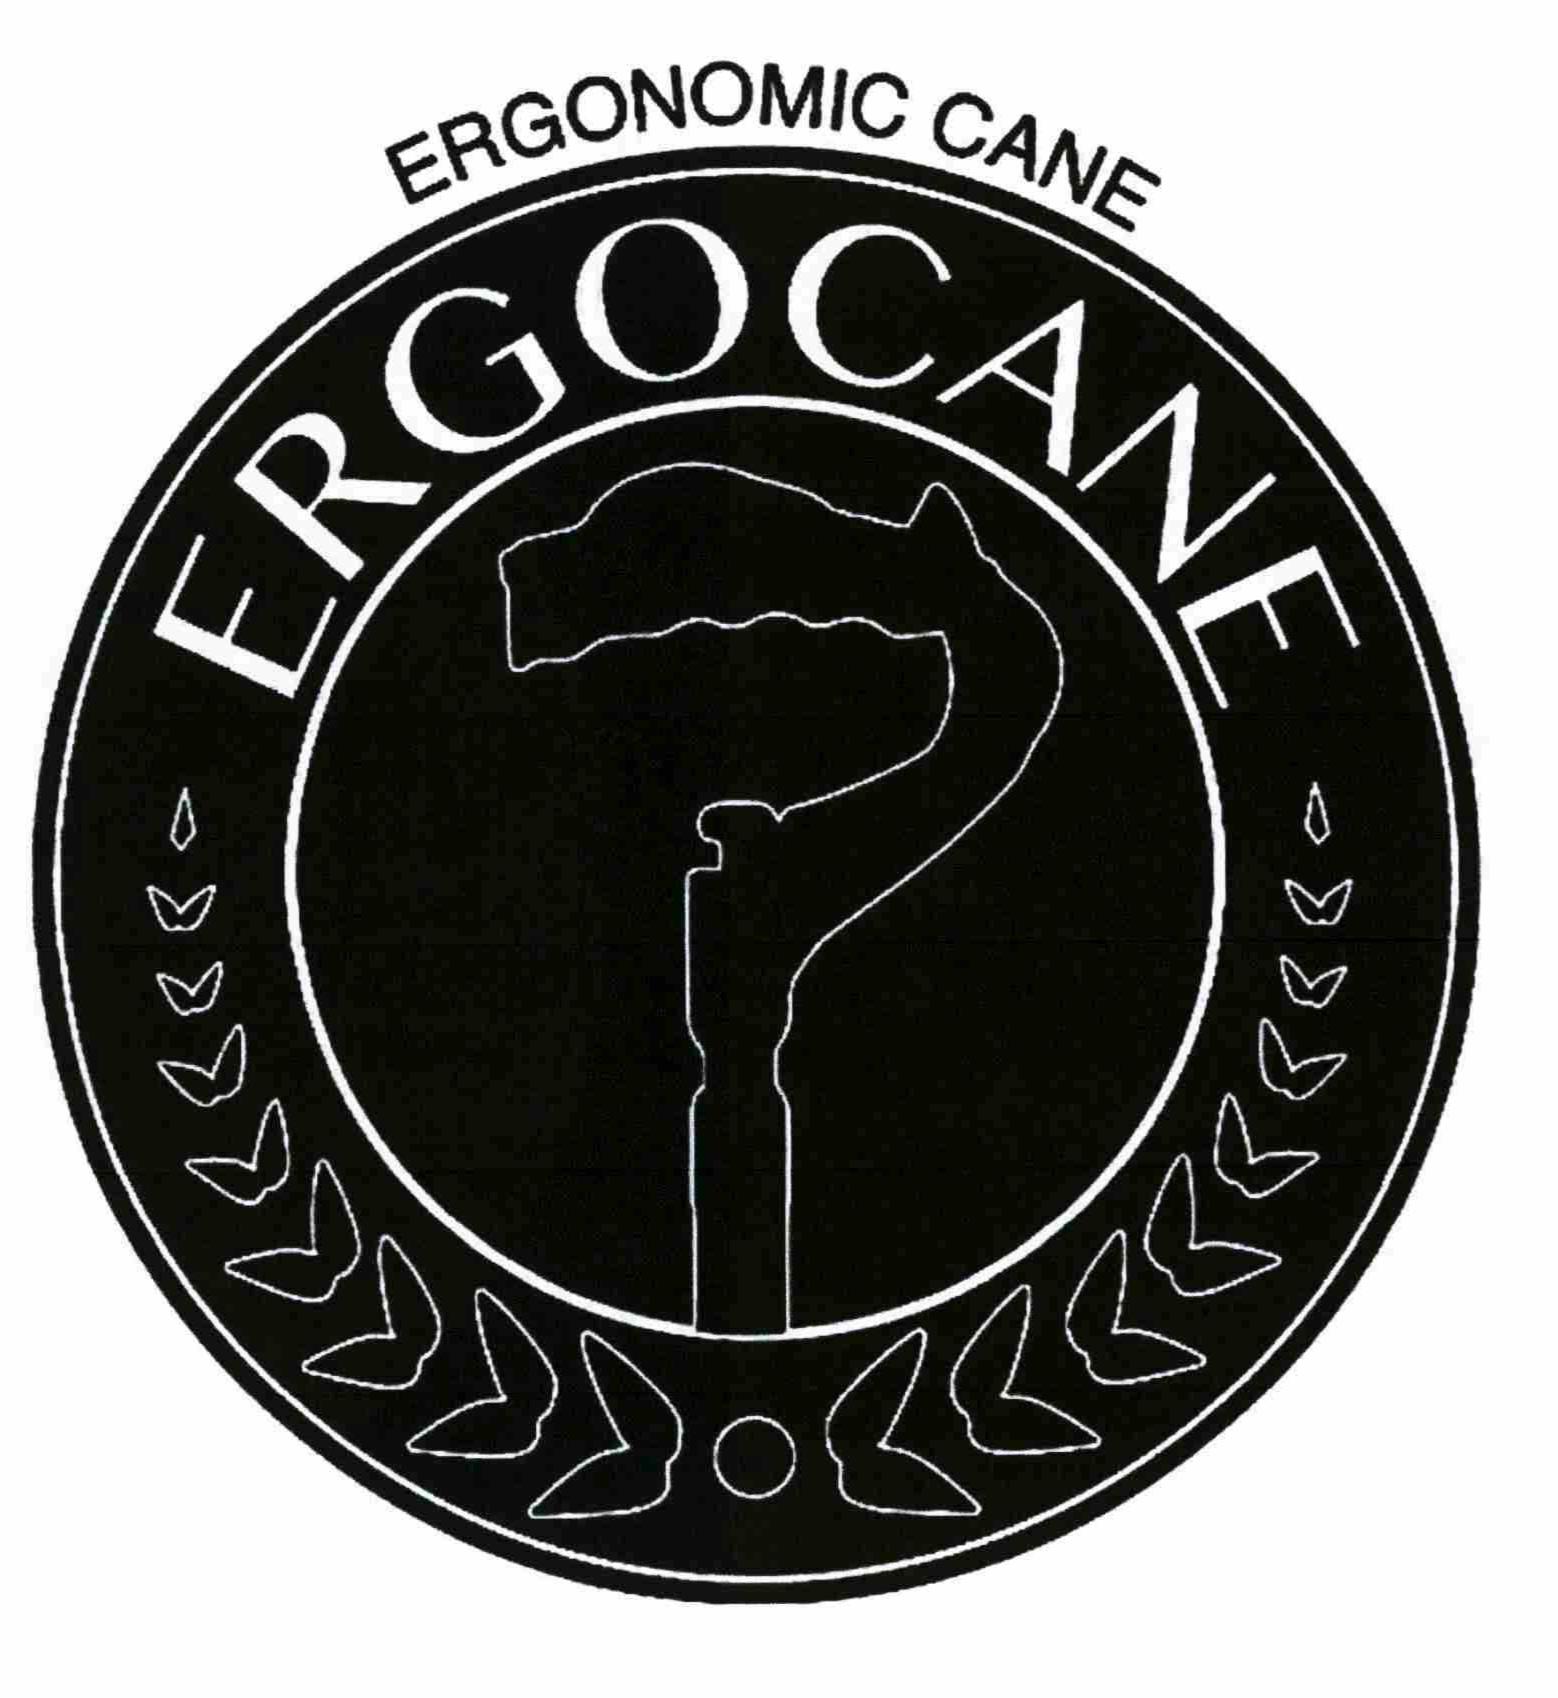  ERGONOMIC CANE ERGOCANE